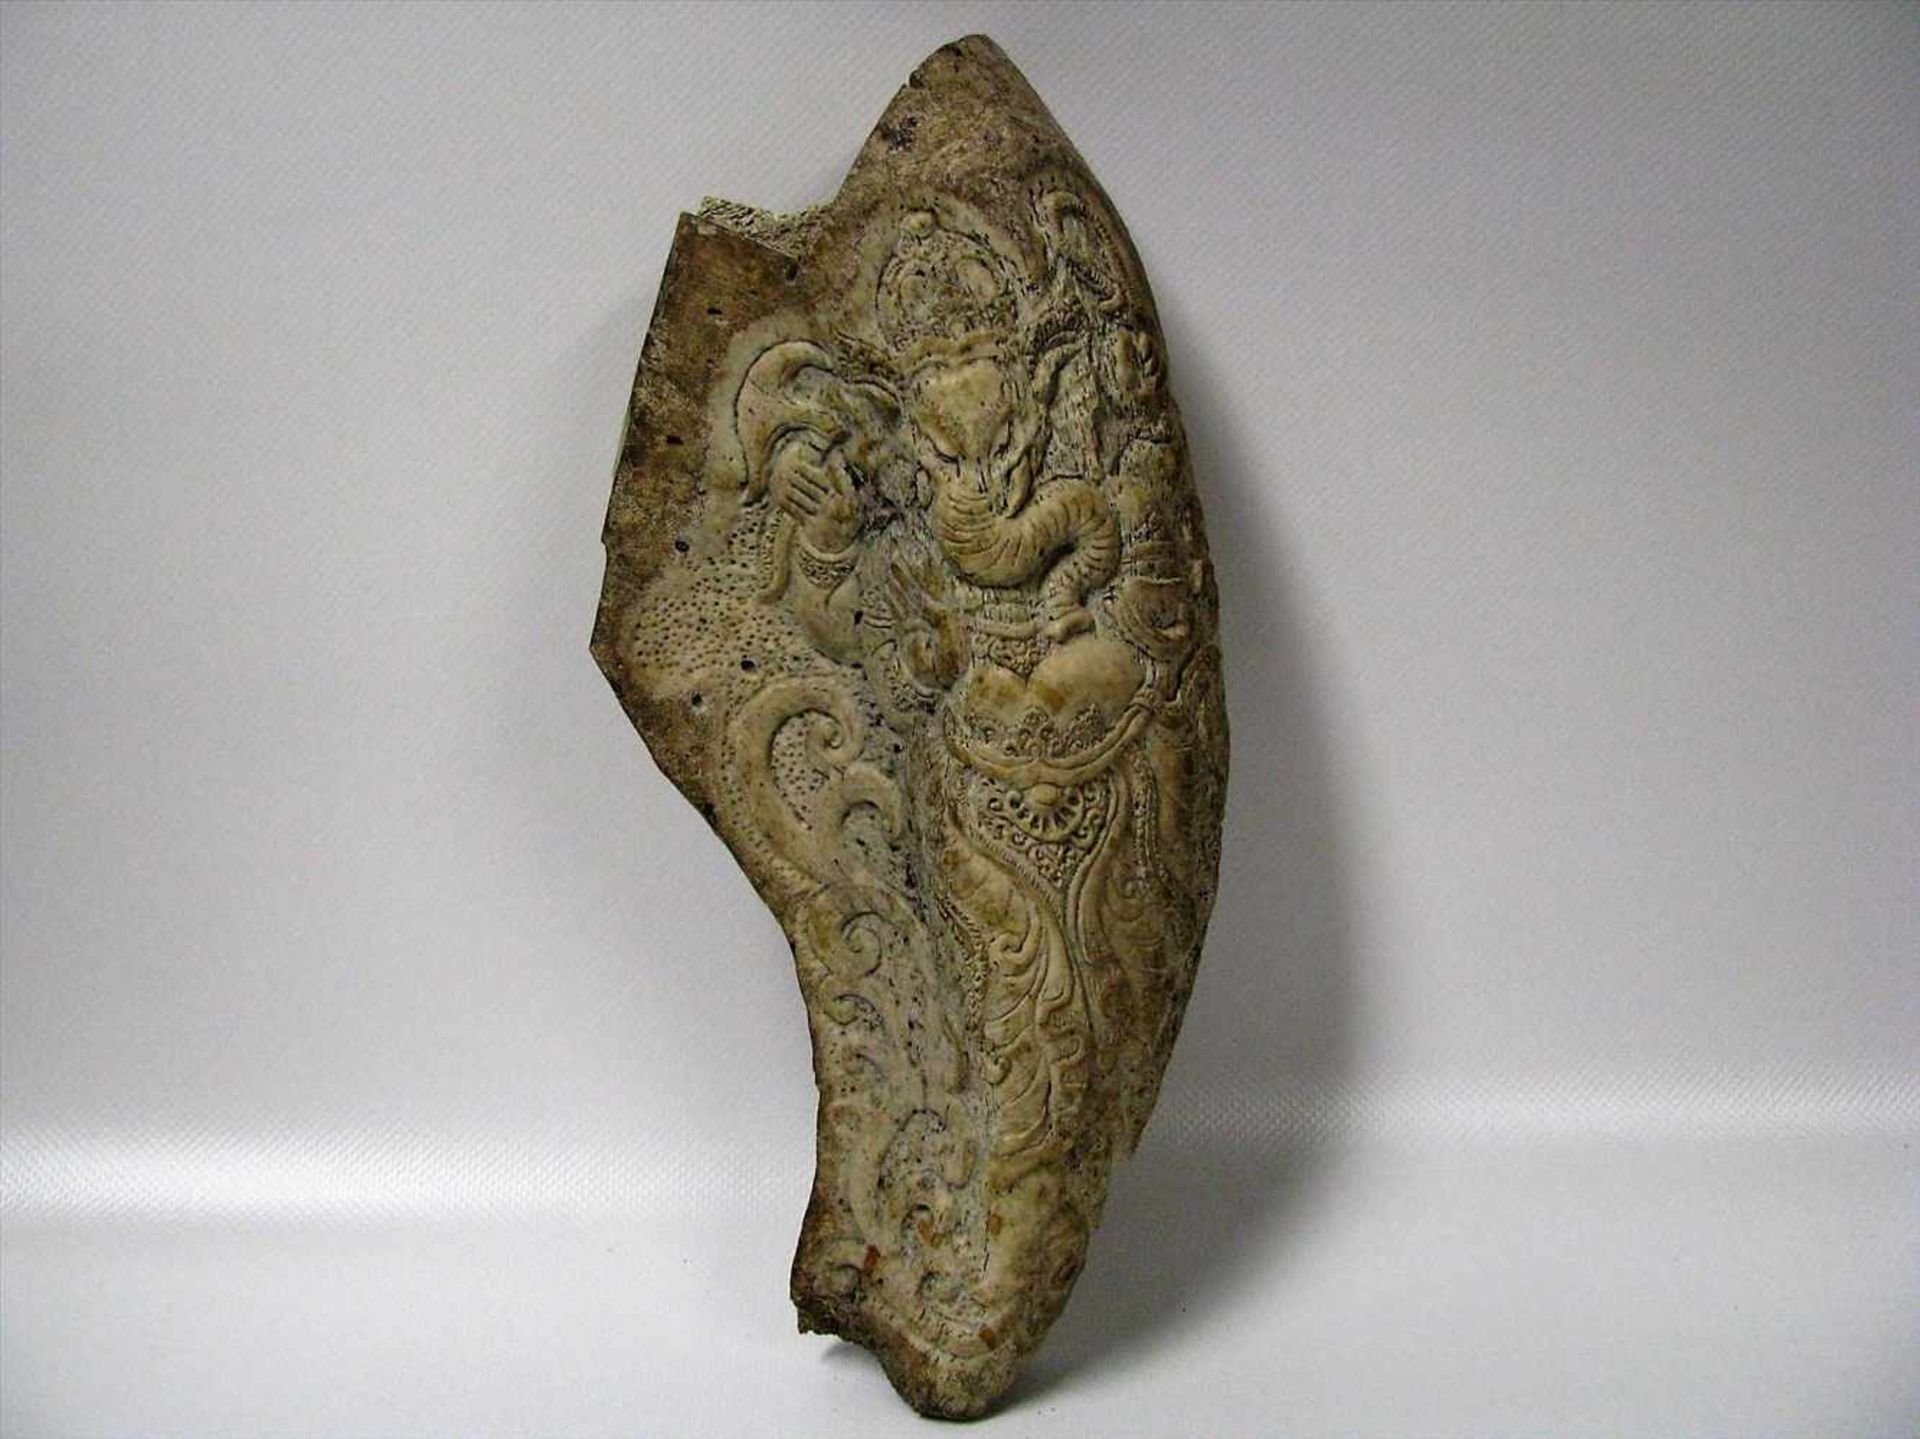 Schnitzerei, Asien, wohl Mammutknochen beschnitzt mit Darstellung des Elefantengotts Ganesha, antik,